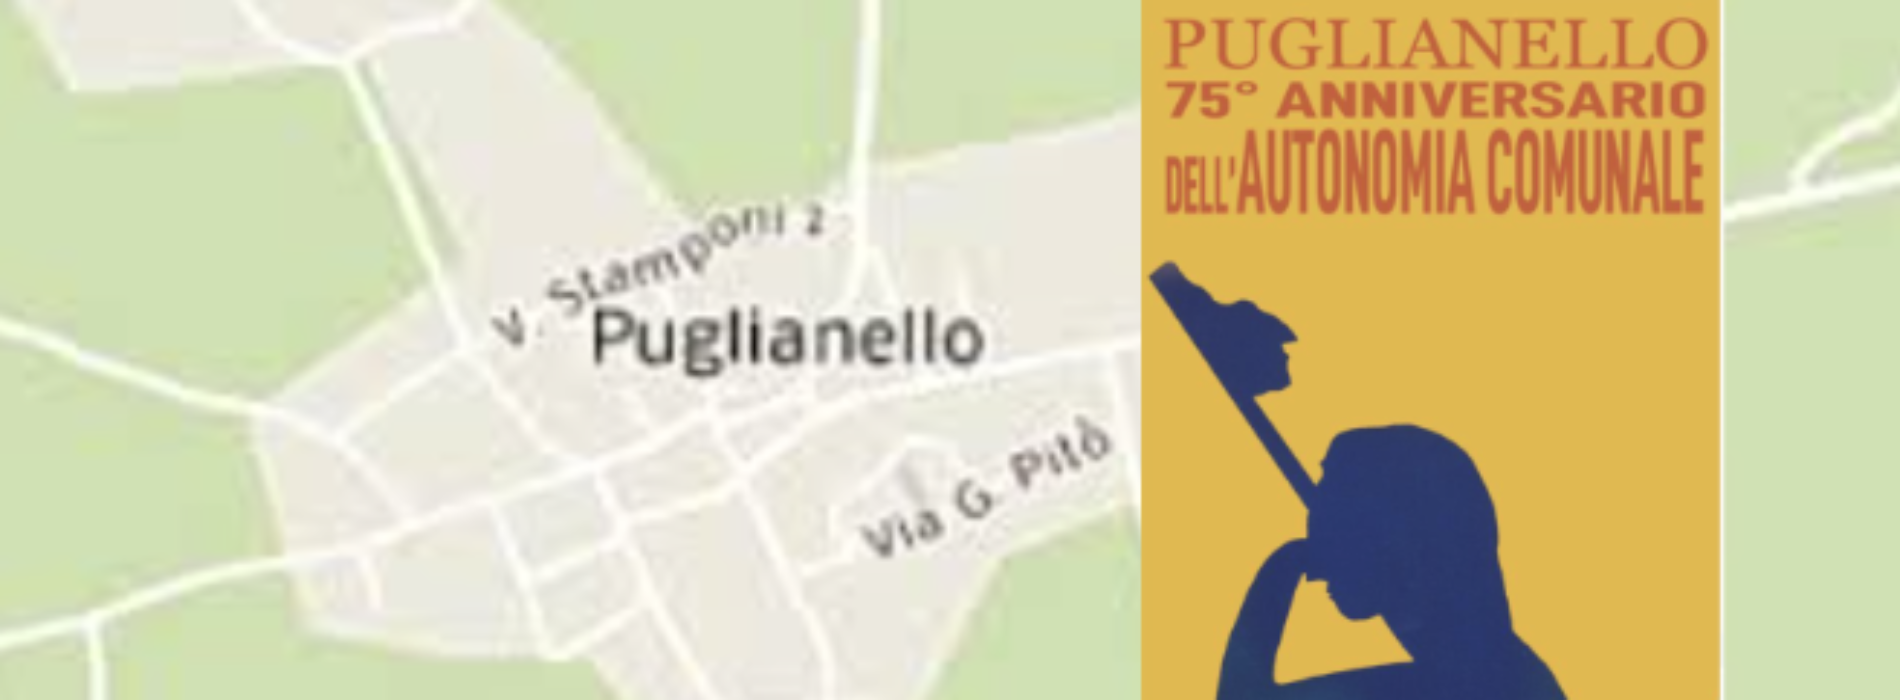 Puglianello è in festa, si celebra l’autonomia comunale